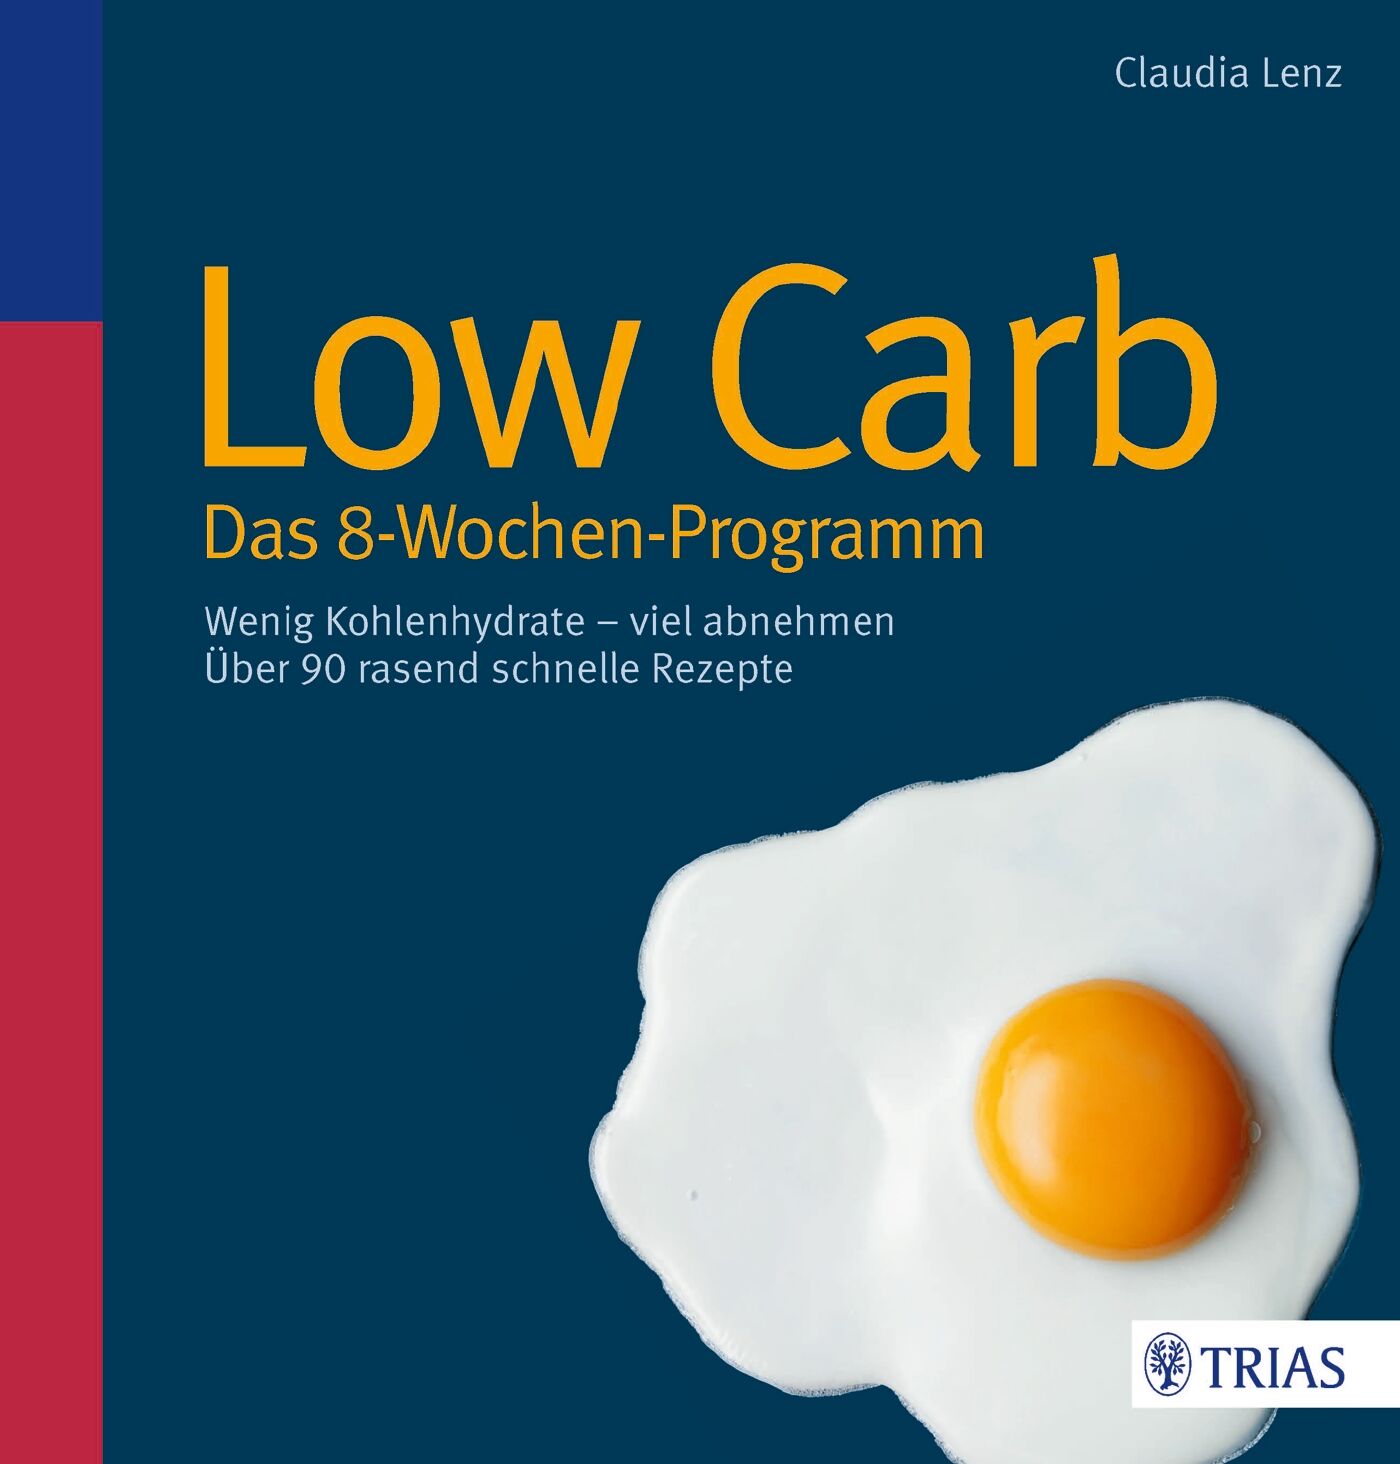 Low Carb - Das 8-Wochen-Programm, 9783830467076